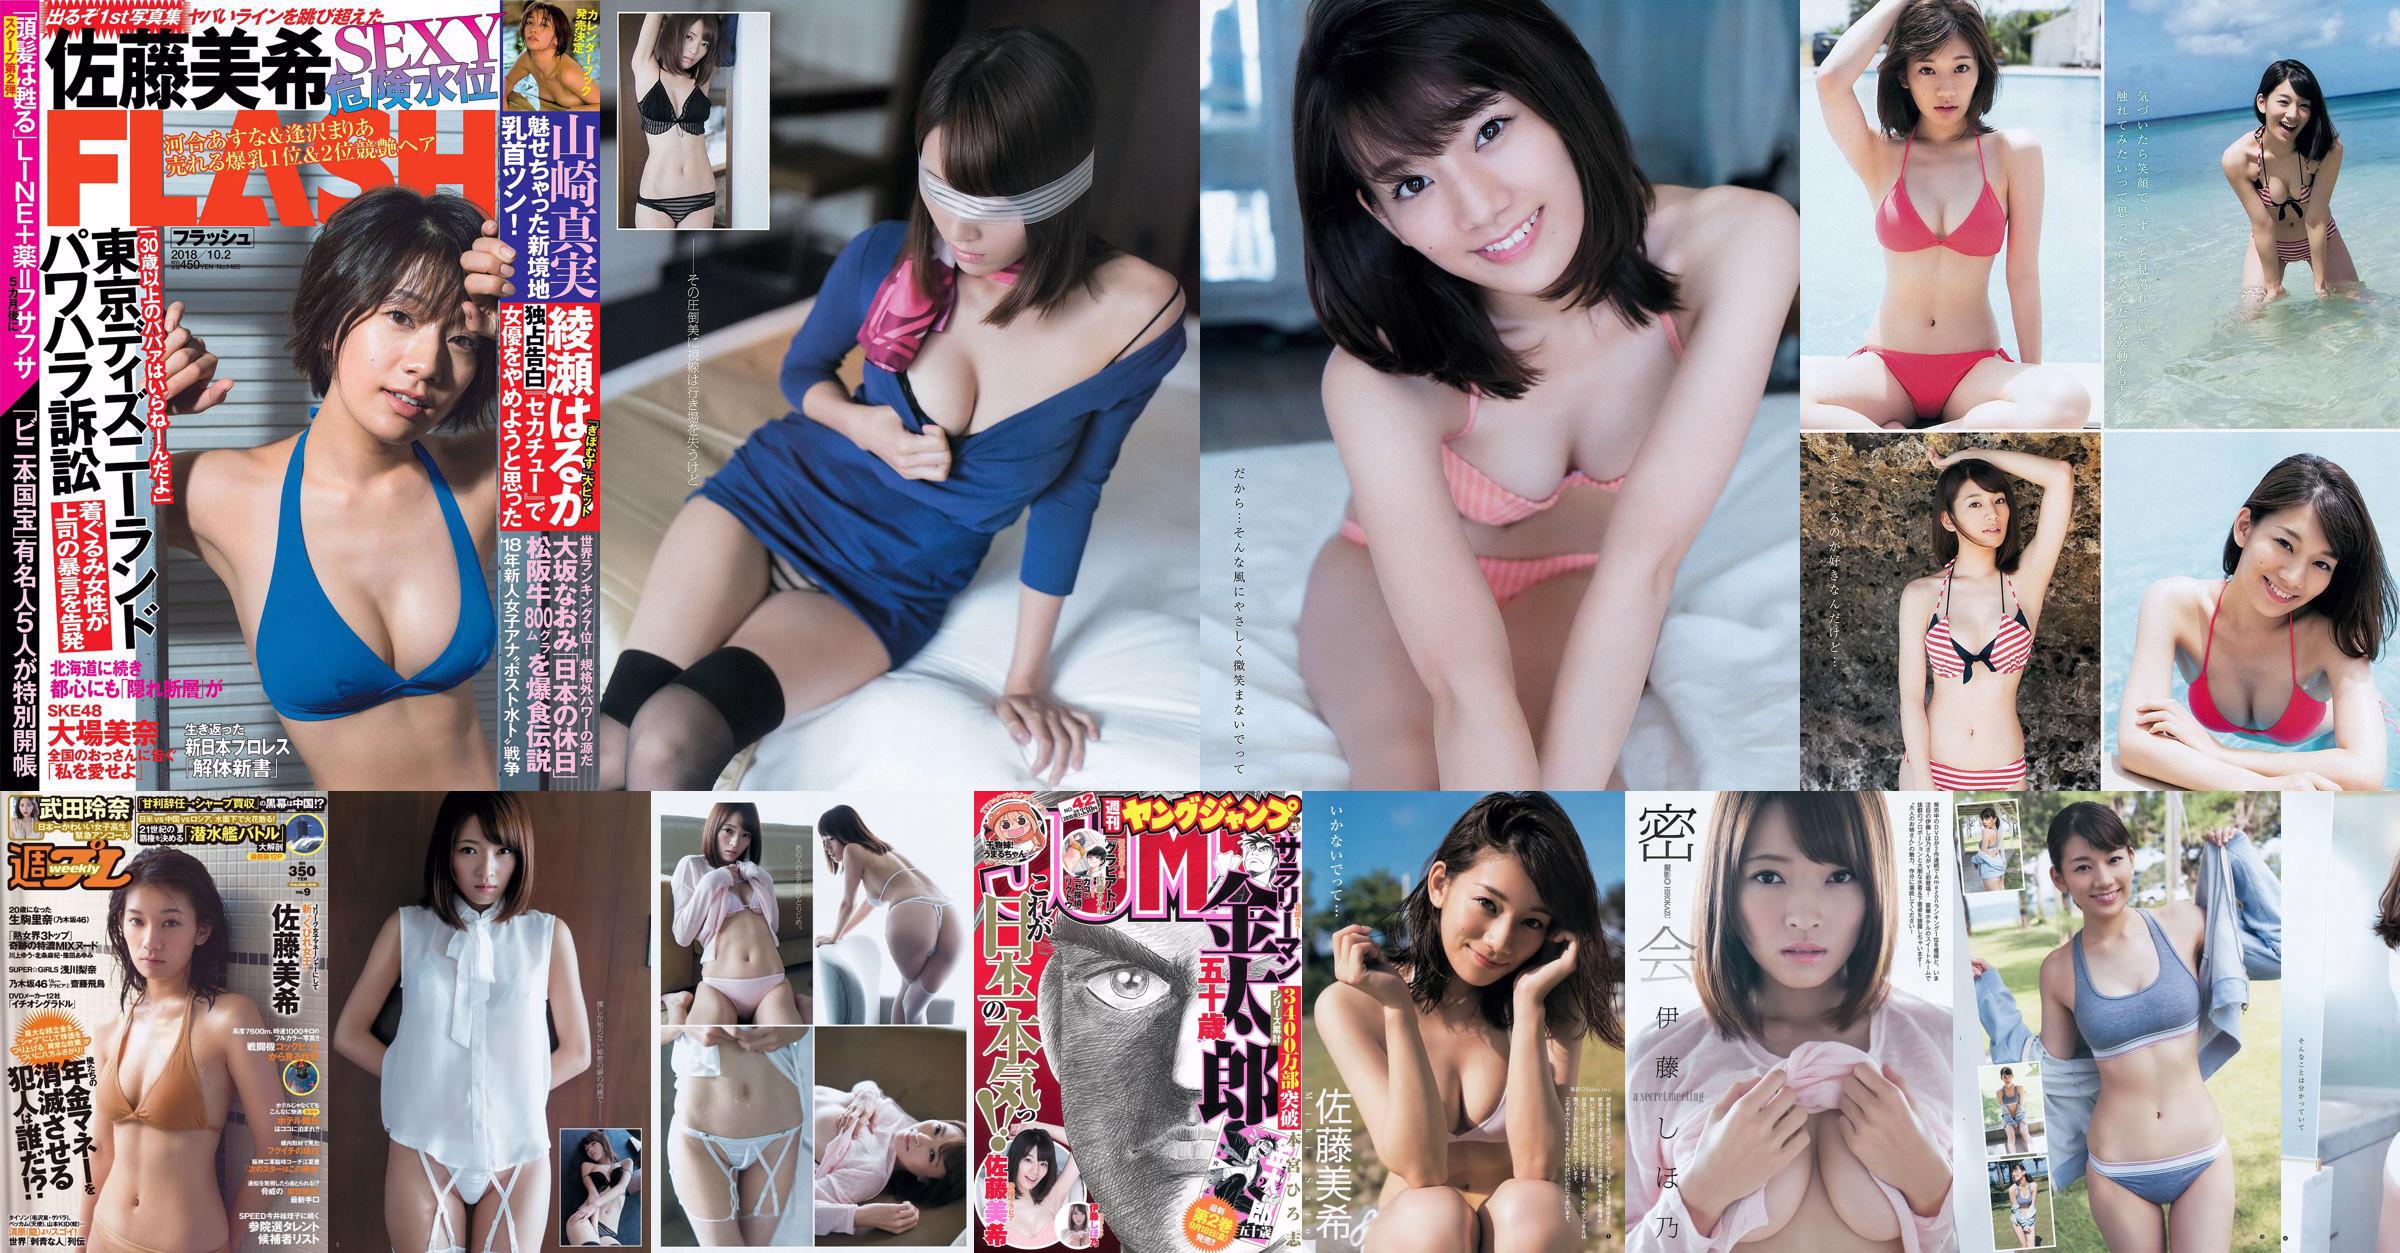 Sato Maki Ito Kayano [Weekly Young Jump] Magazine photo n ° 42 2015 No.6451ca Page 4